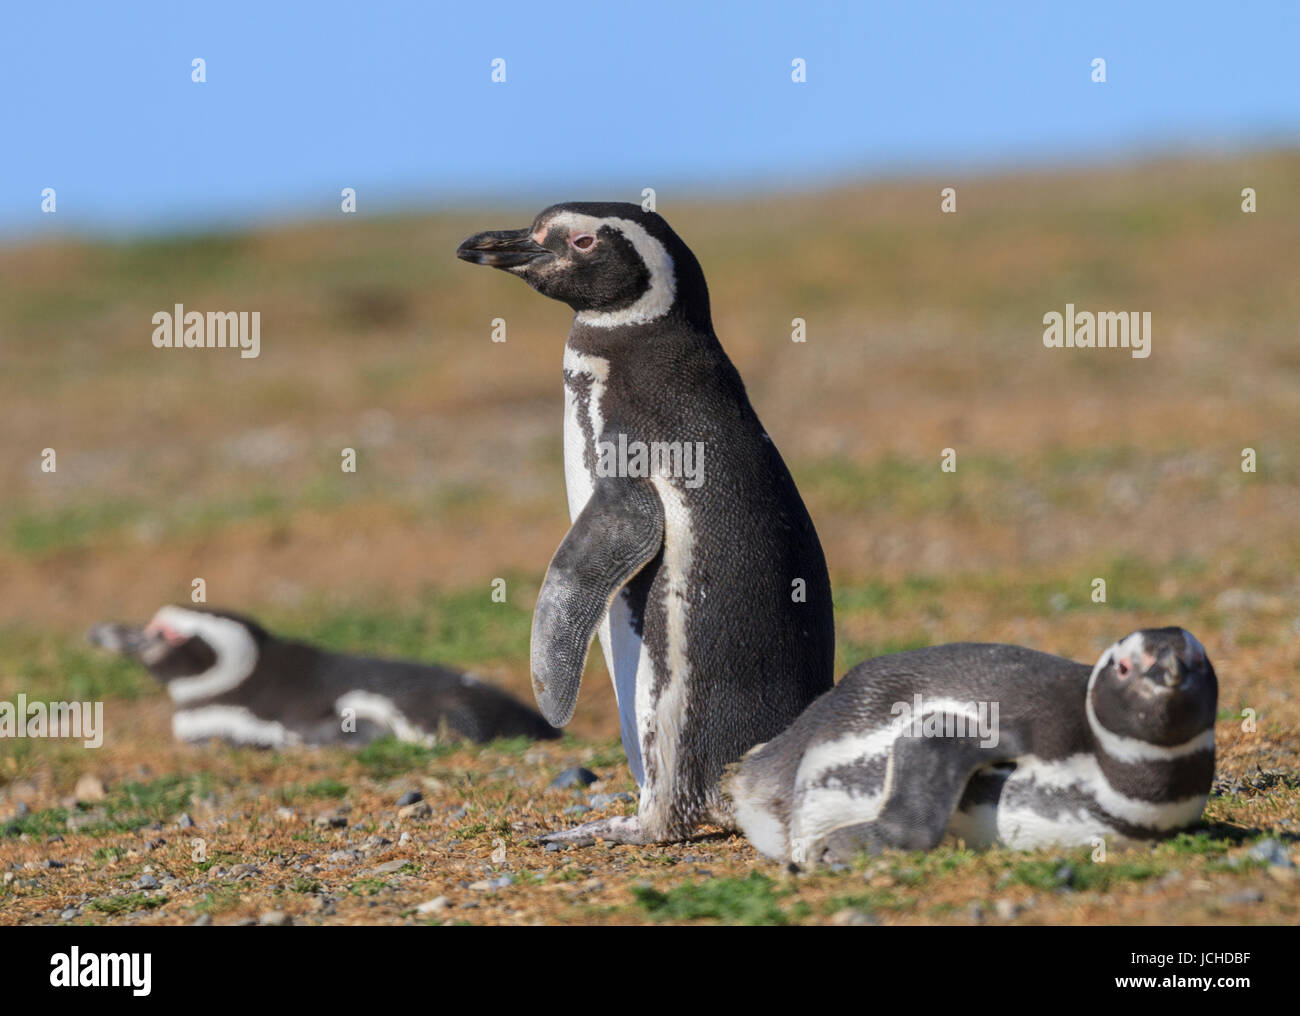 Monumento Natural Los Pinguinos, Isla Magdalena, Punta Arenas, Chile Stock Photo